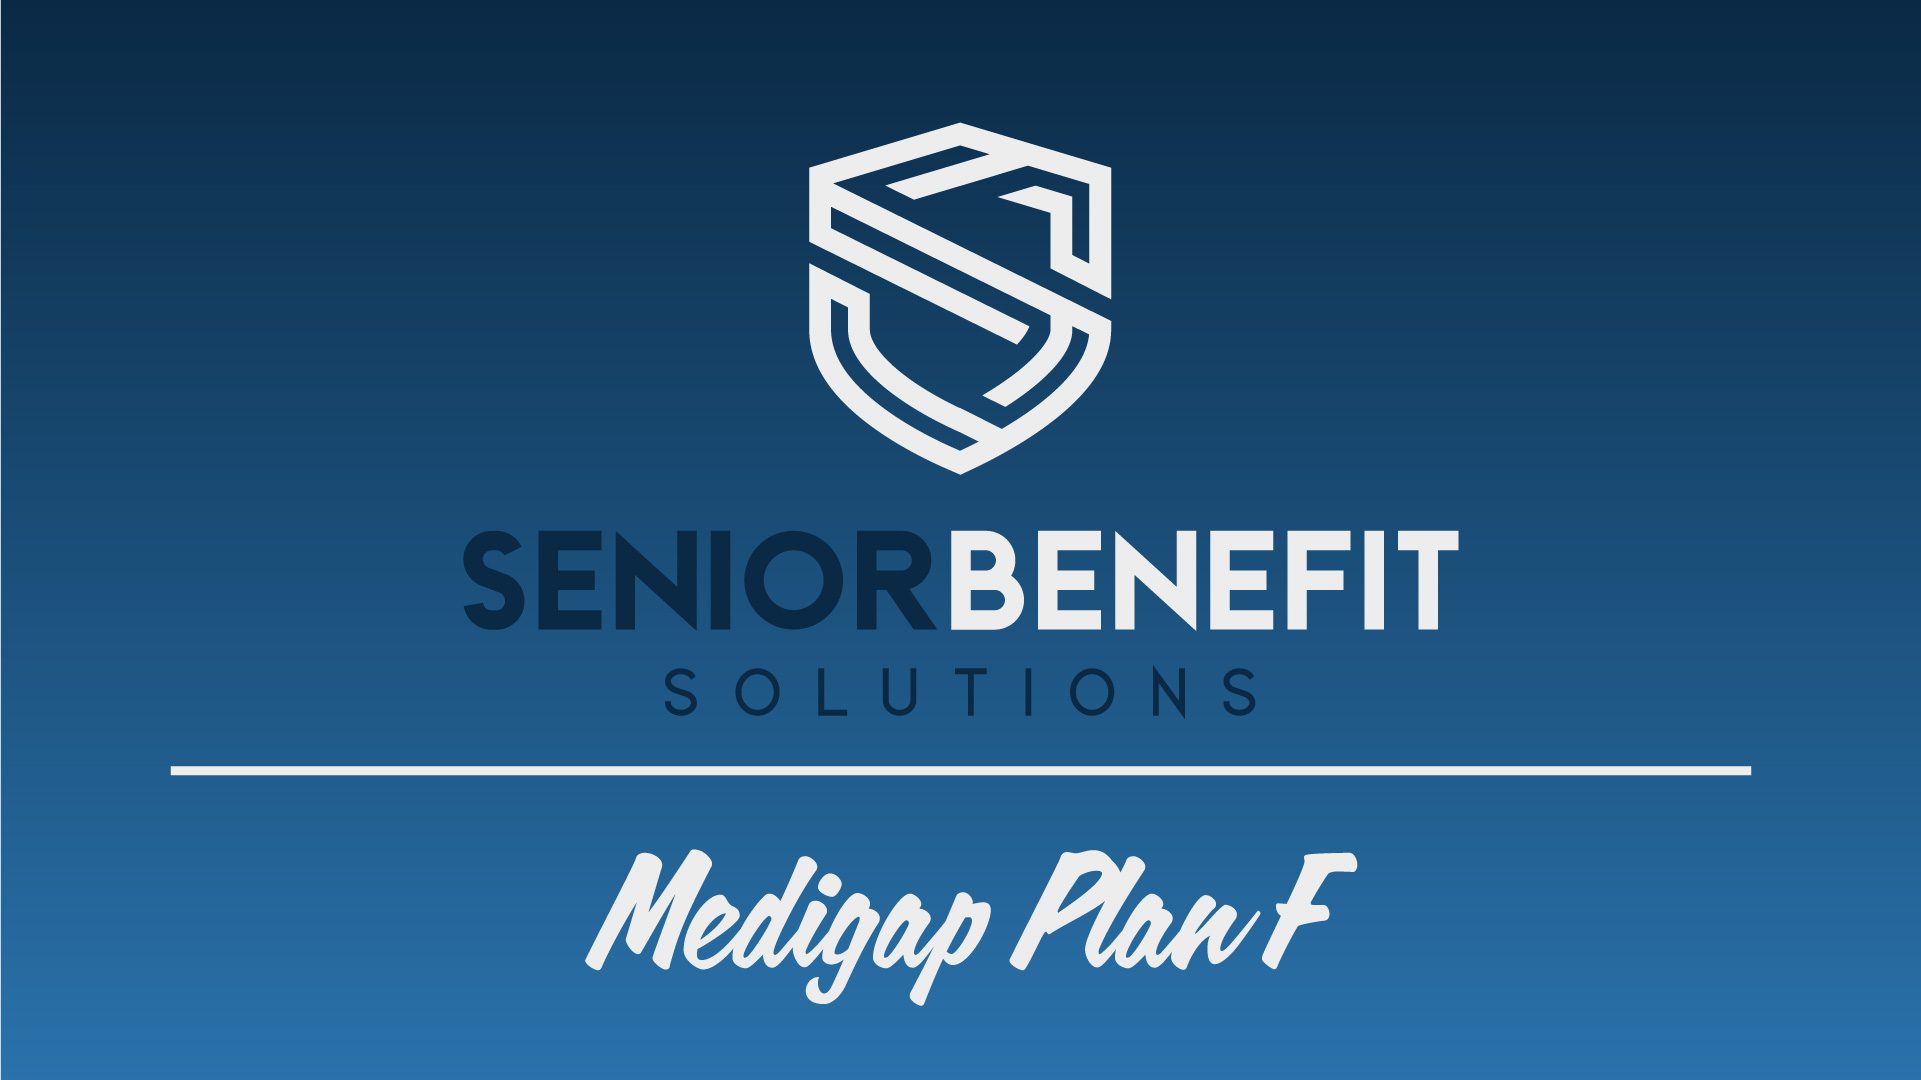 Senior Benefit Solutions; Medigap Plan F